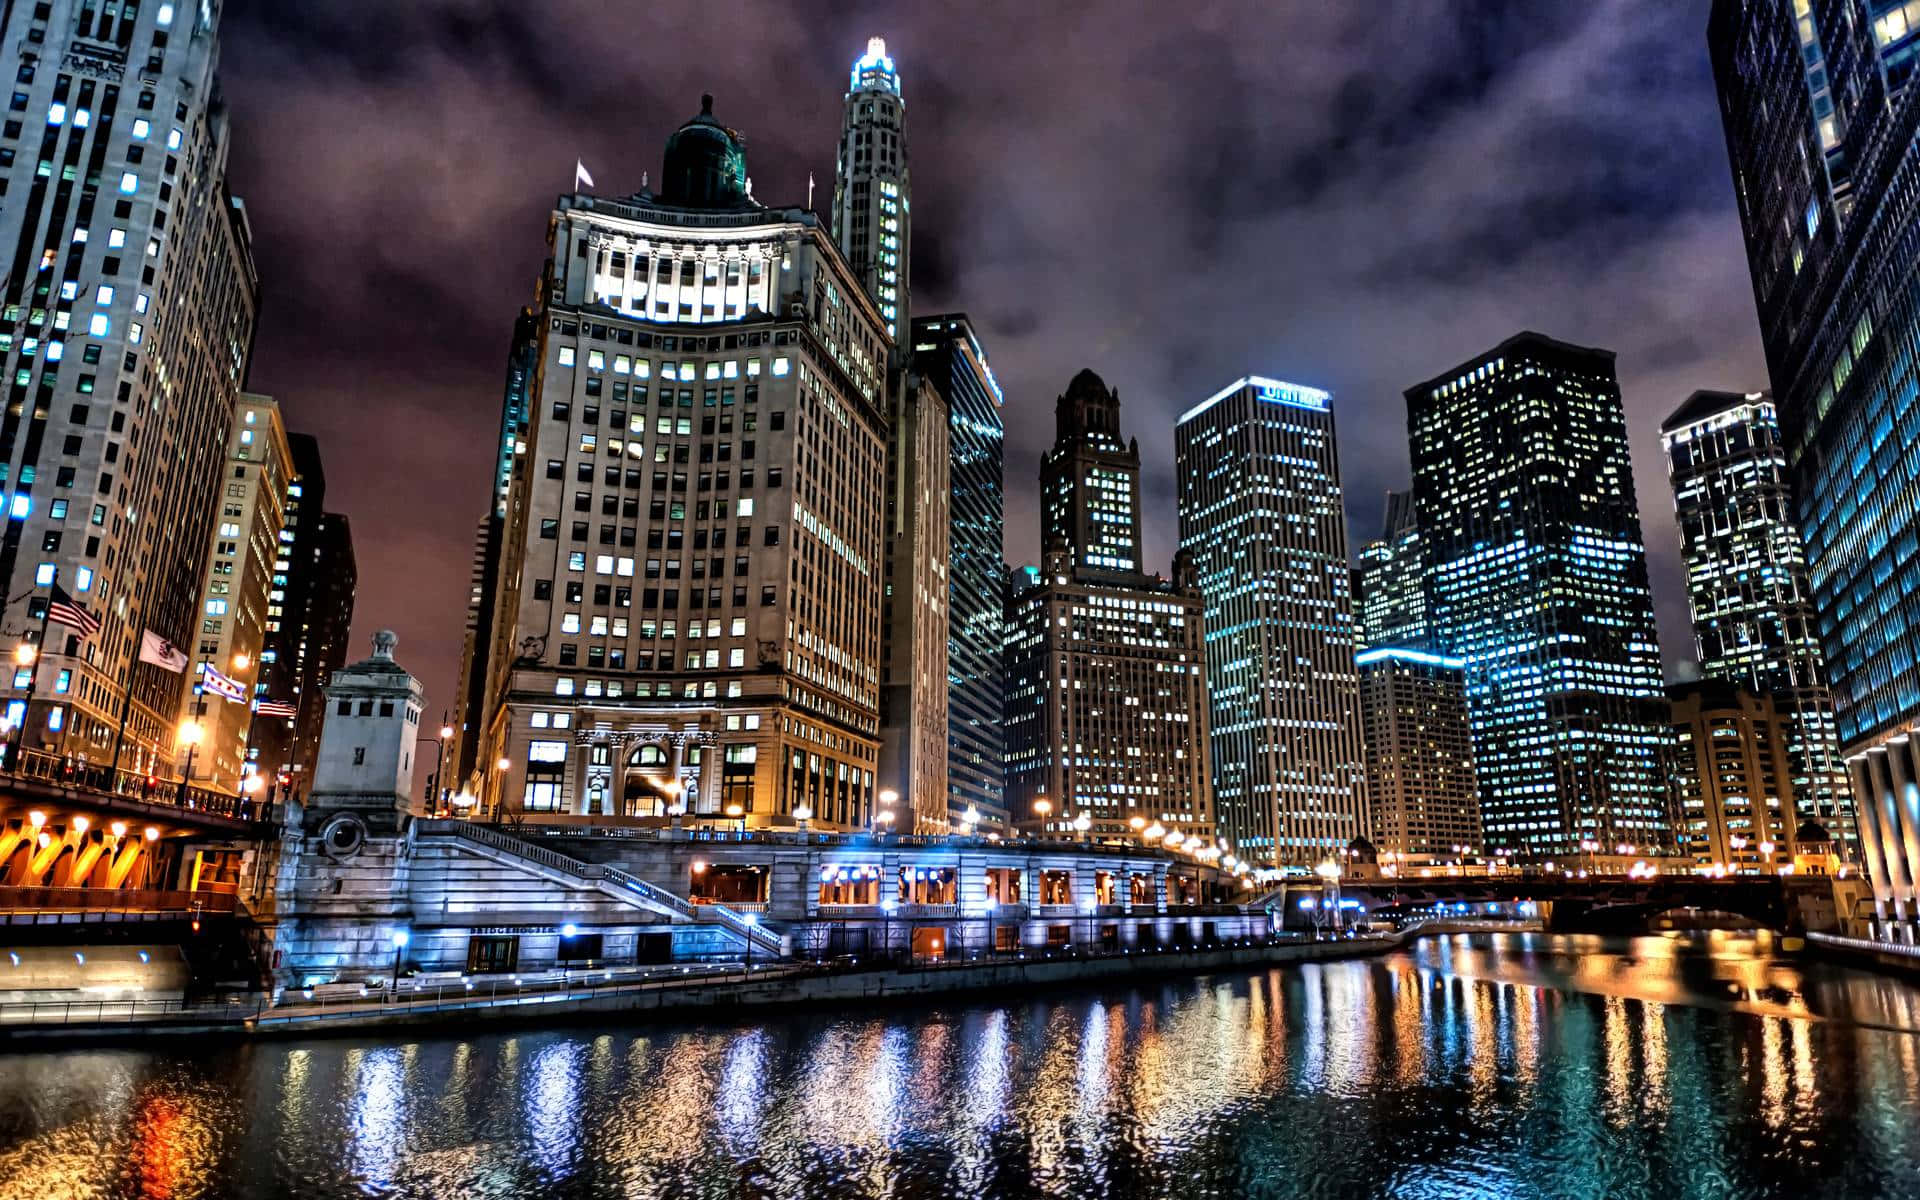 Erlebeeinen Majestätischen Blick Auf Die Stadt Chicago Bei Nacht. Wallpaper